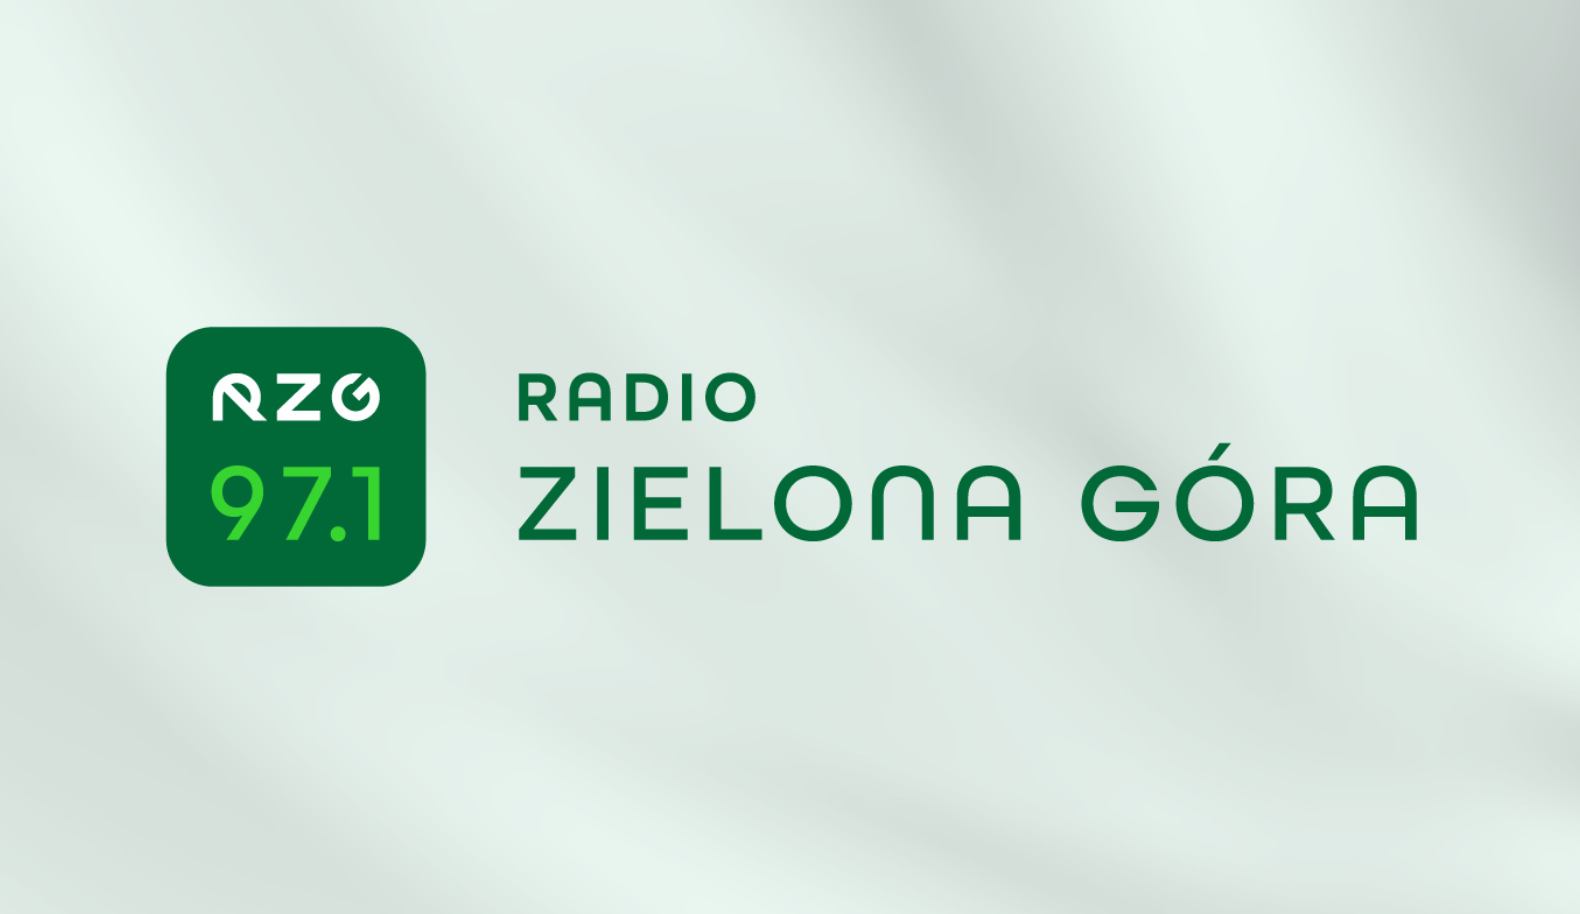 Radio Zielona Gora Rzg Serwis Informacyjny